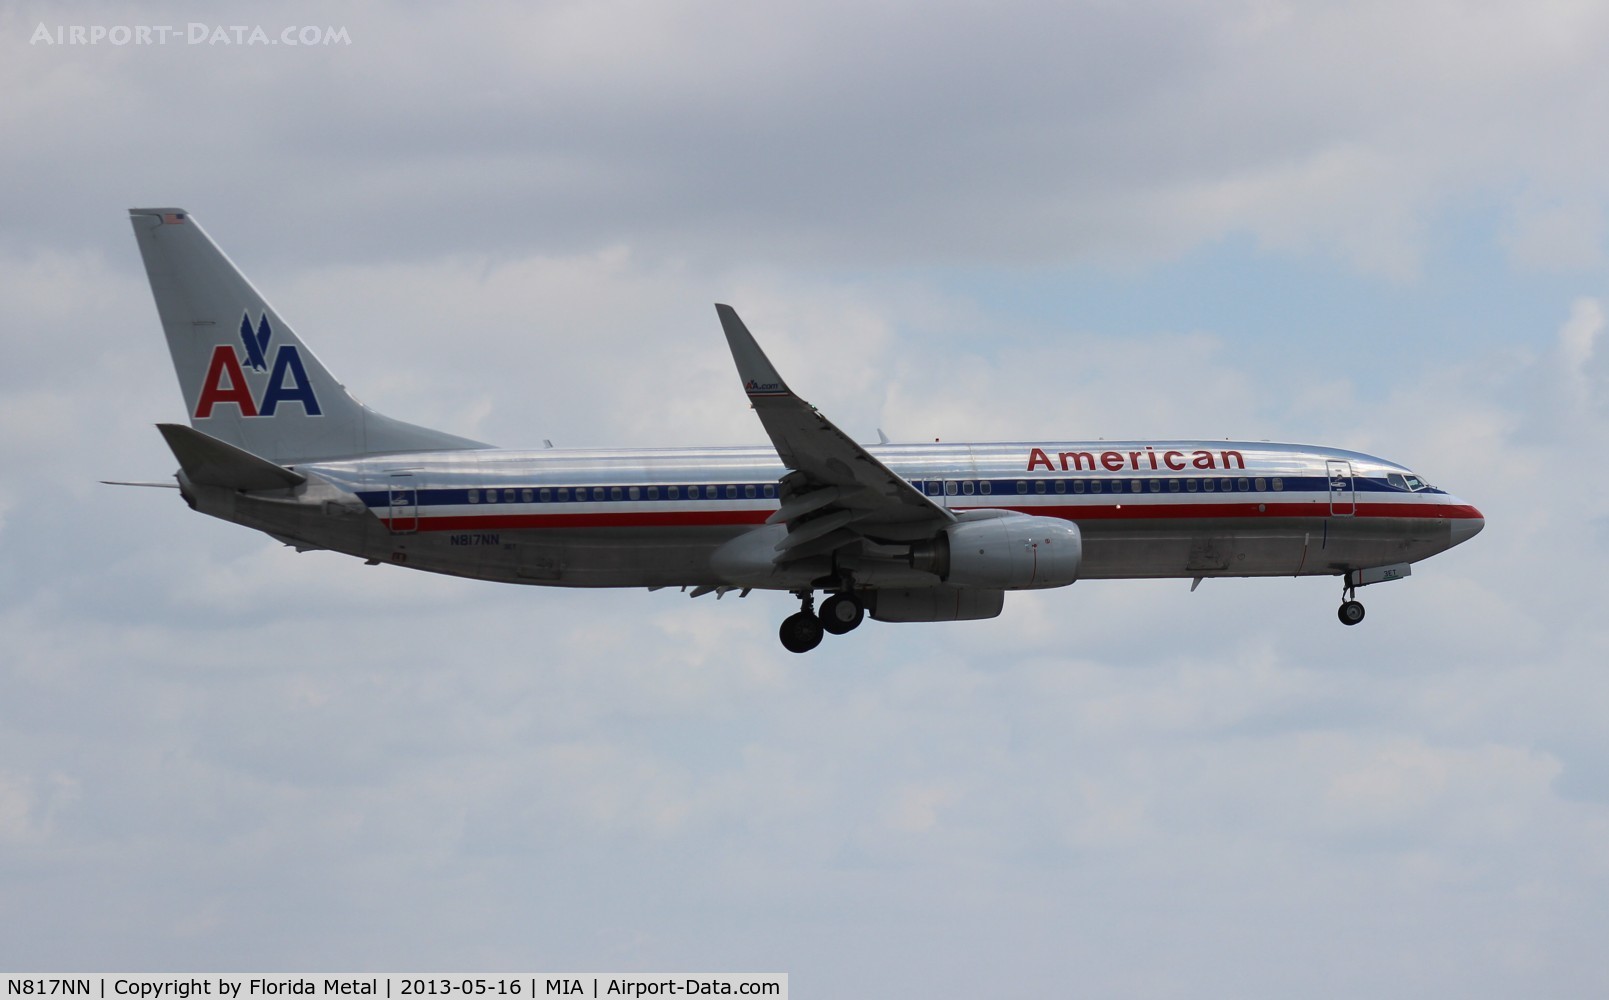 N817NN, 2009 Boeing 737-823 C/N 29558, American